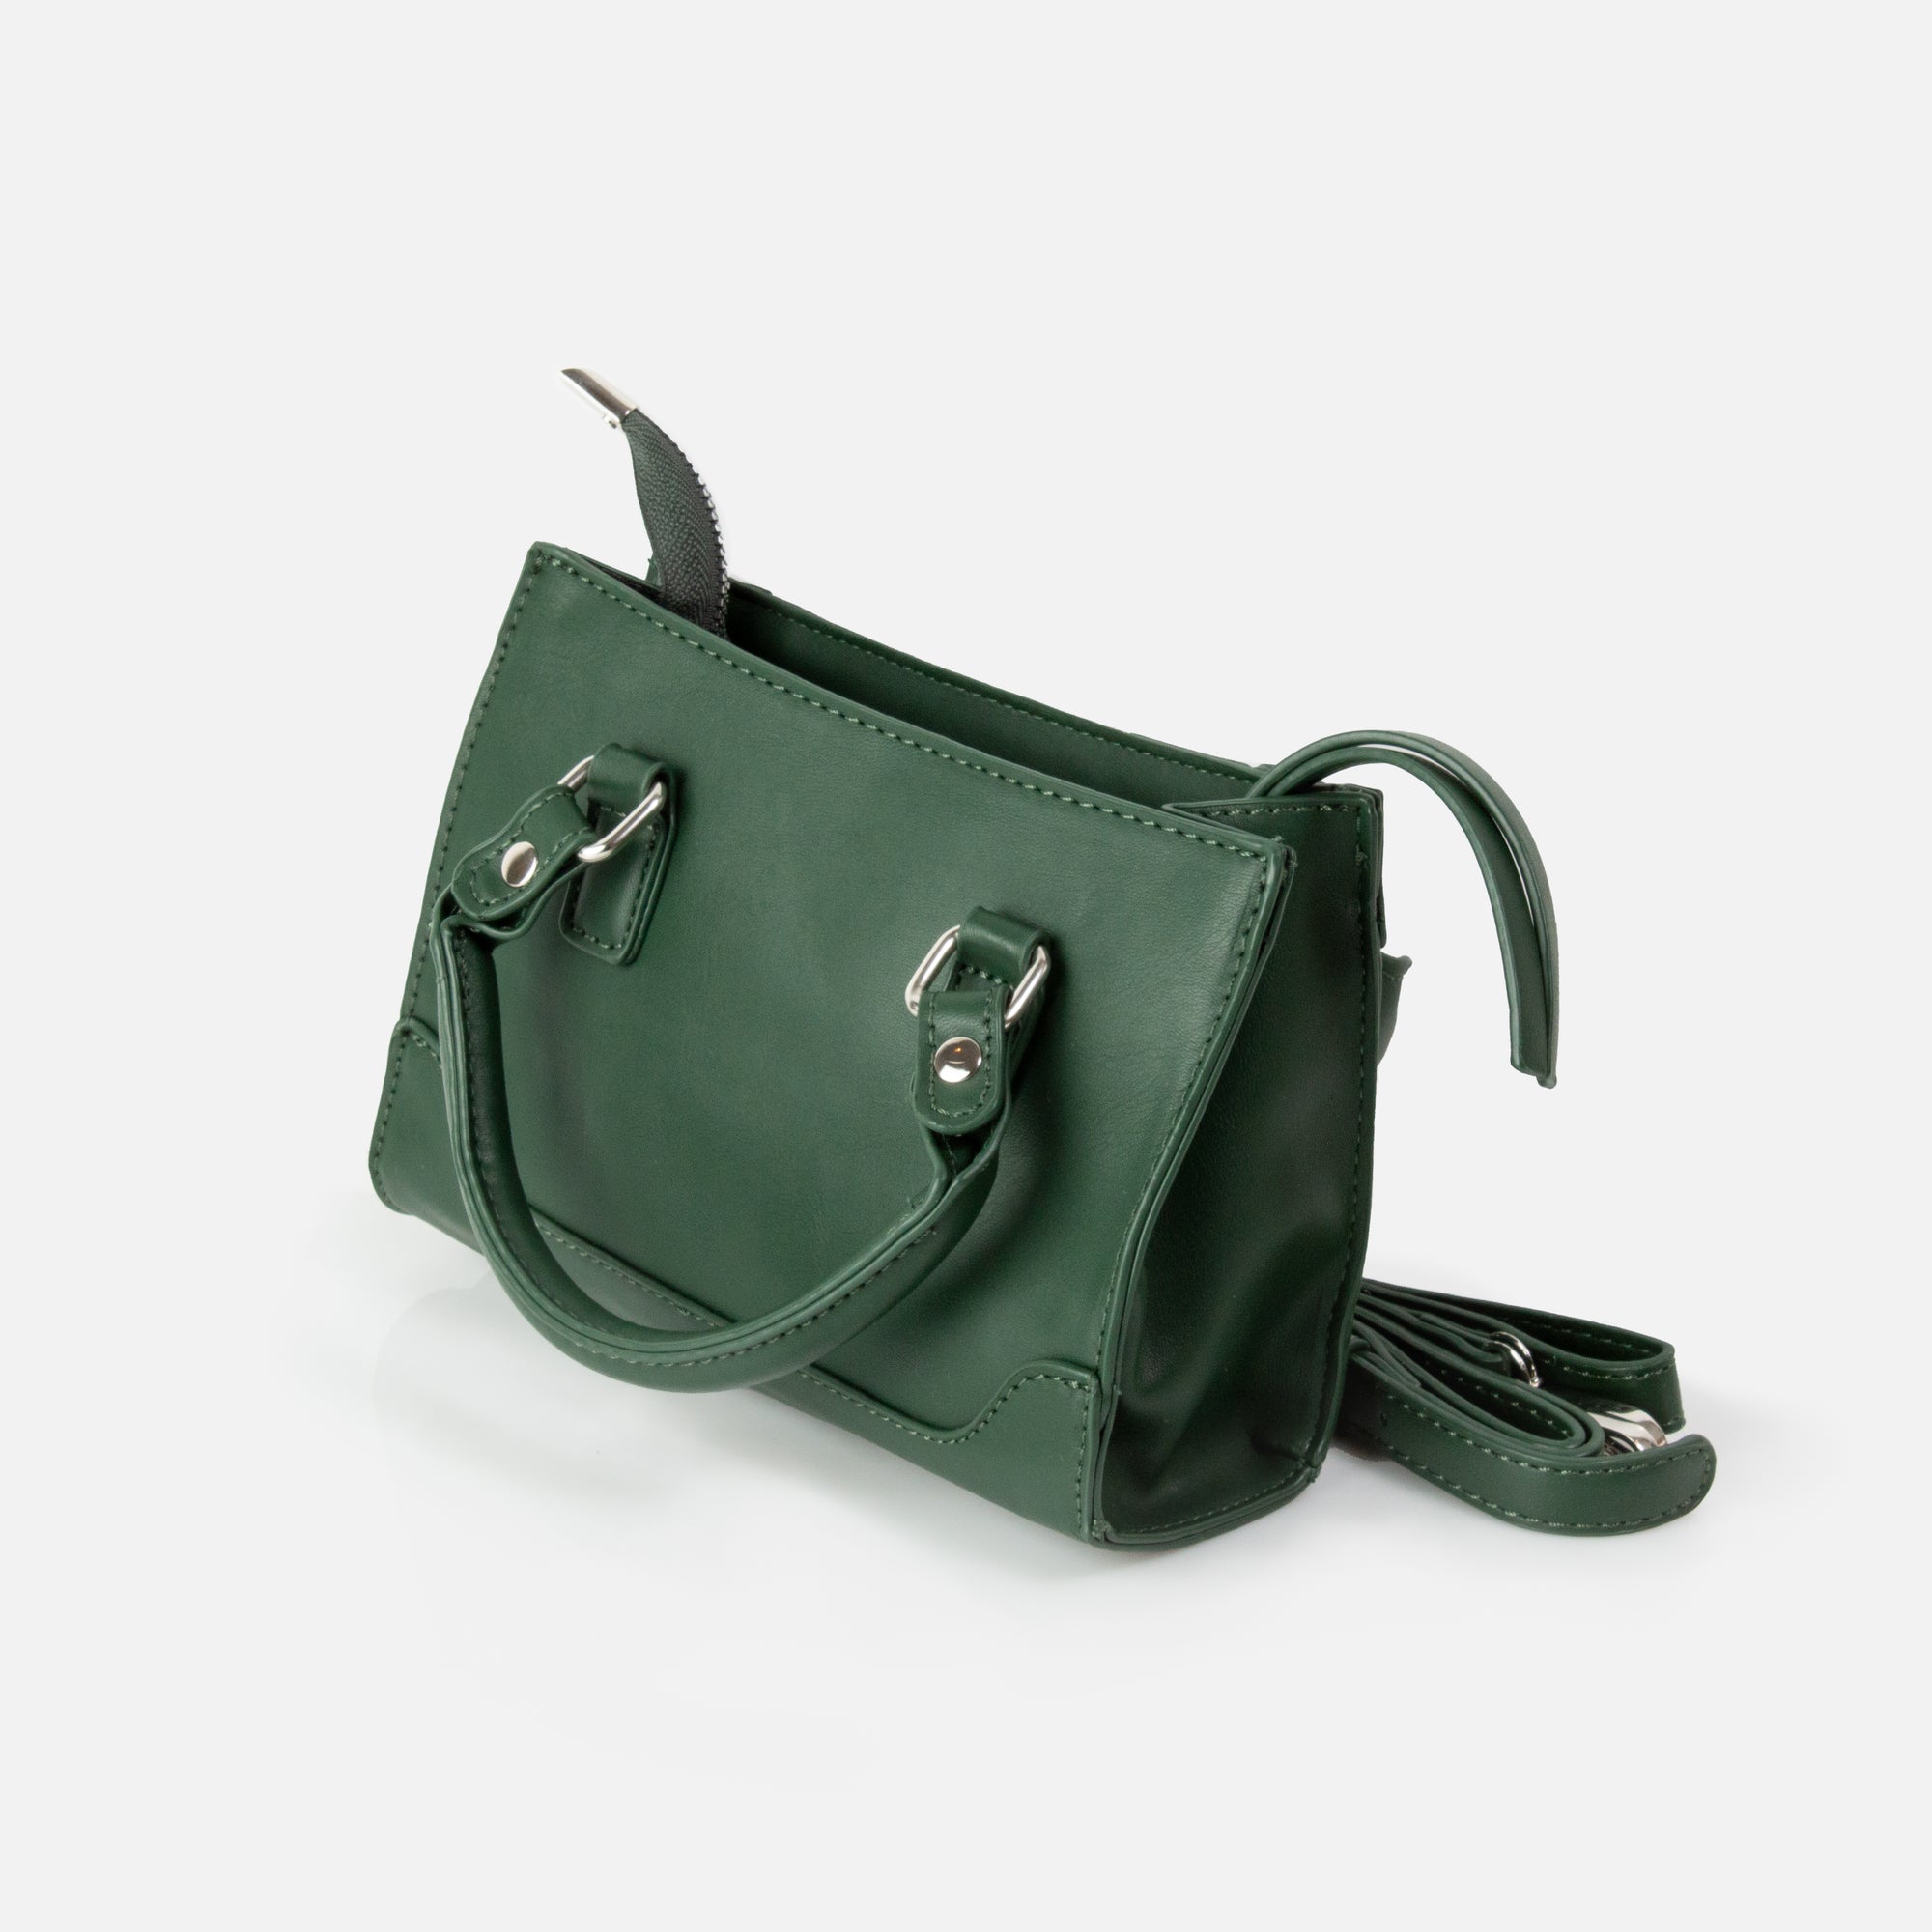 Dark green crossbody handbag